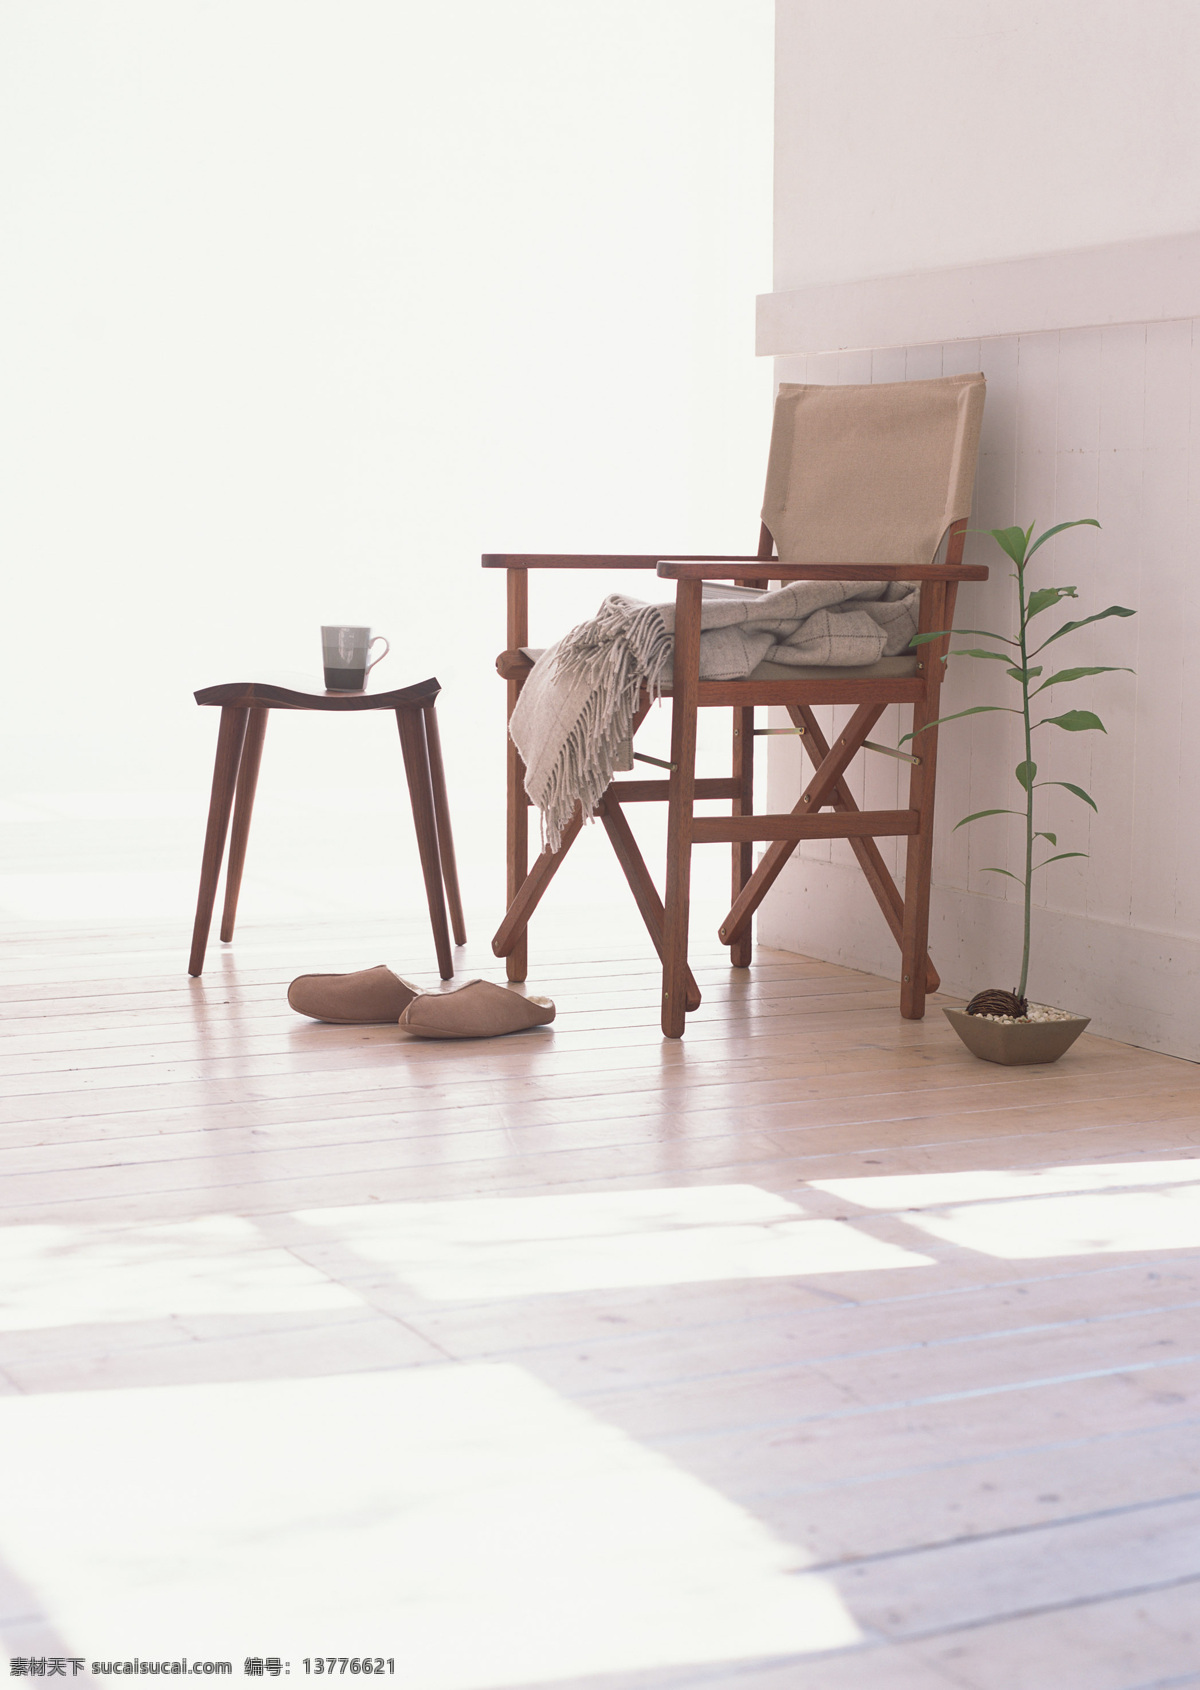 简约 室内设计 木地板 拖鞋 阳光 椅子 装饰素材